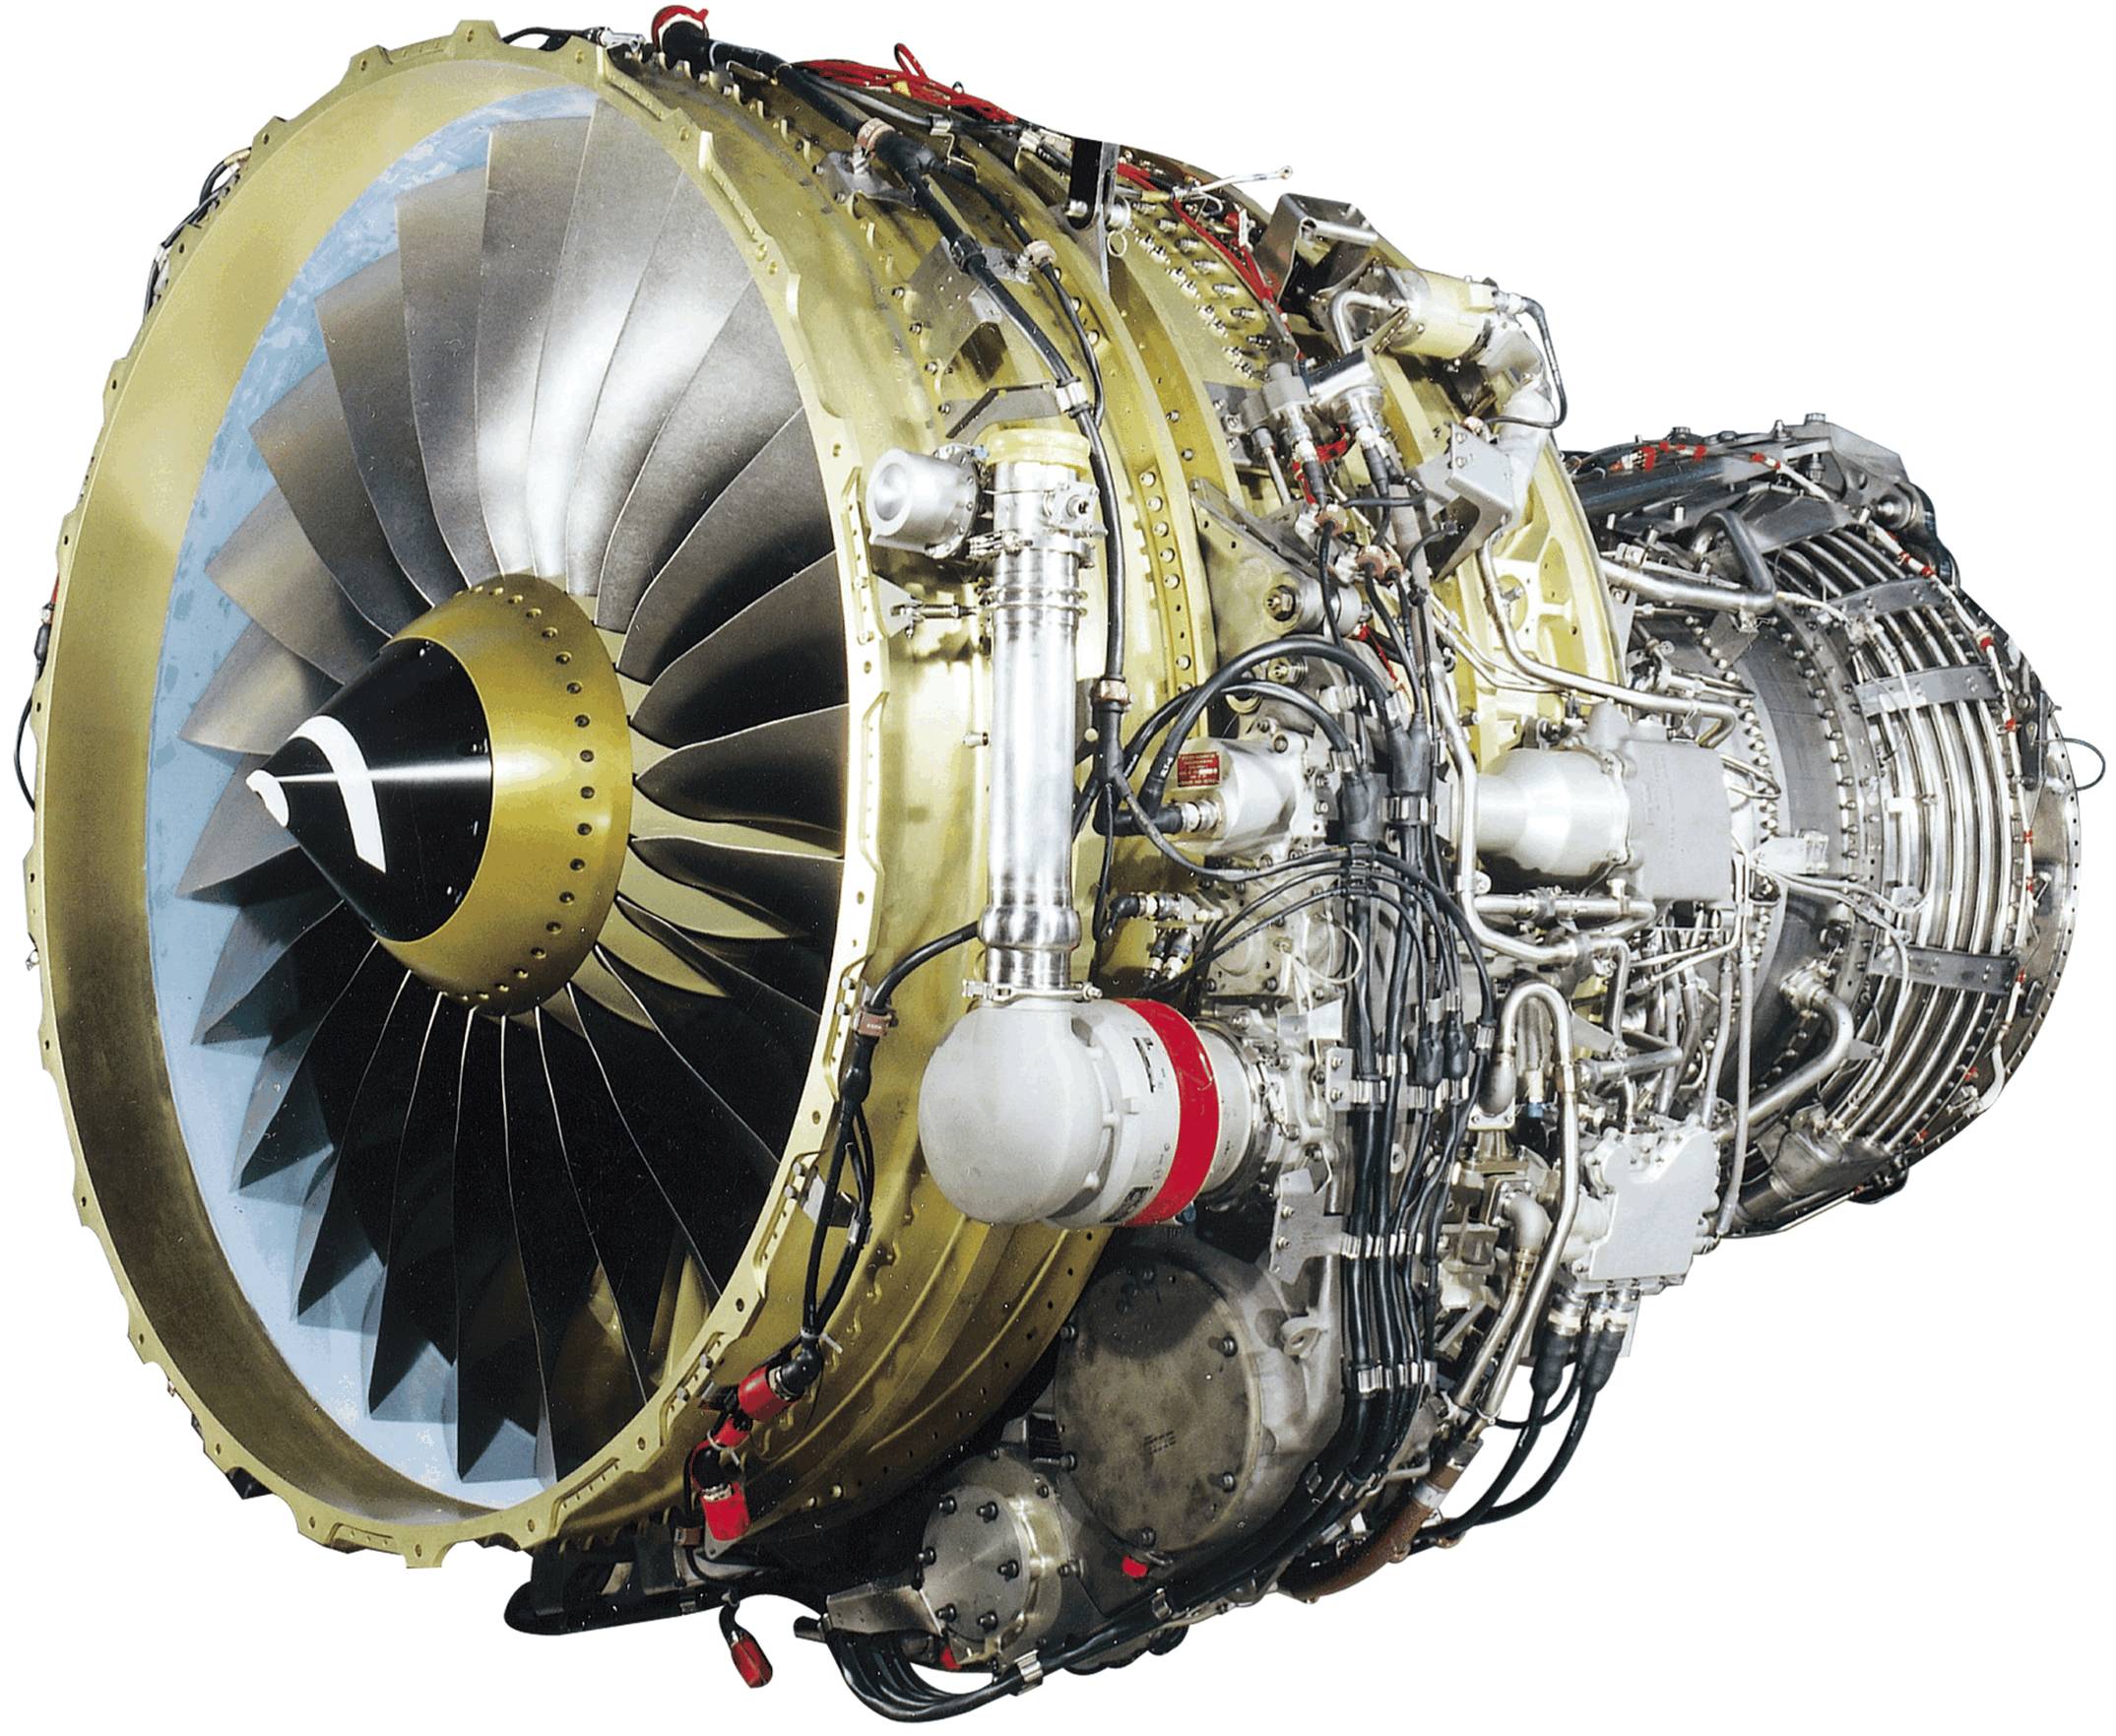 发动机是由cfm国际公司正在研制的高涵道比双转子轴流式涡扇发动机